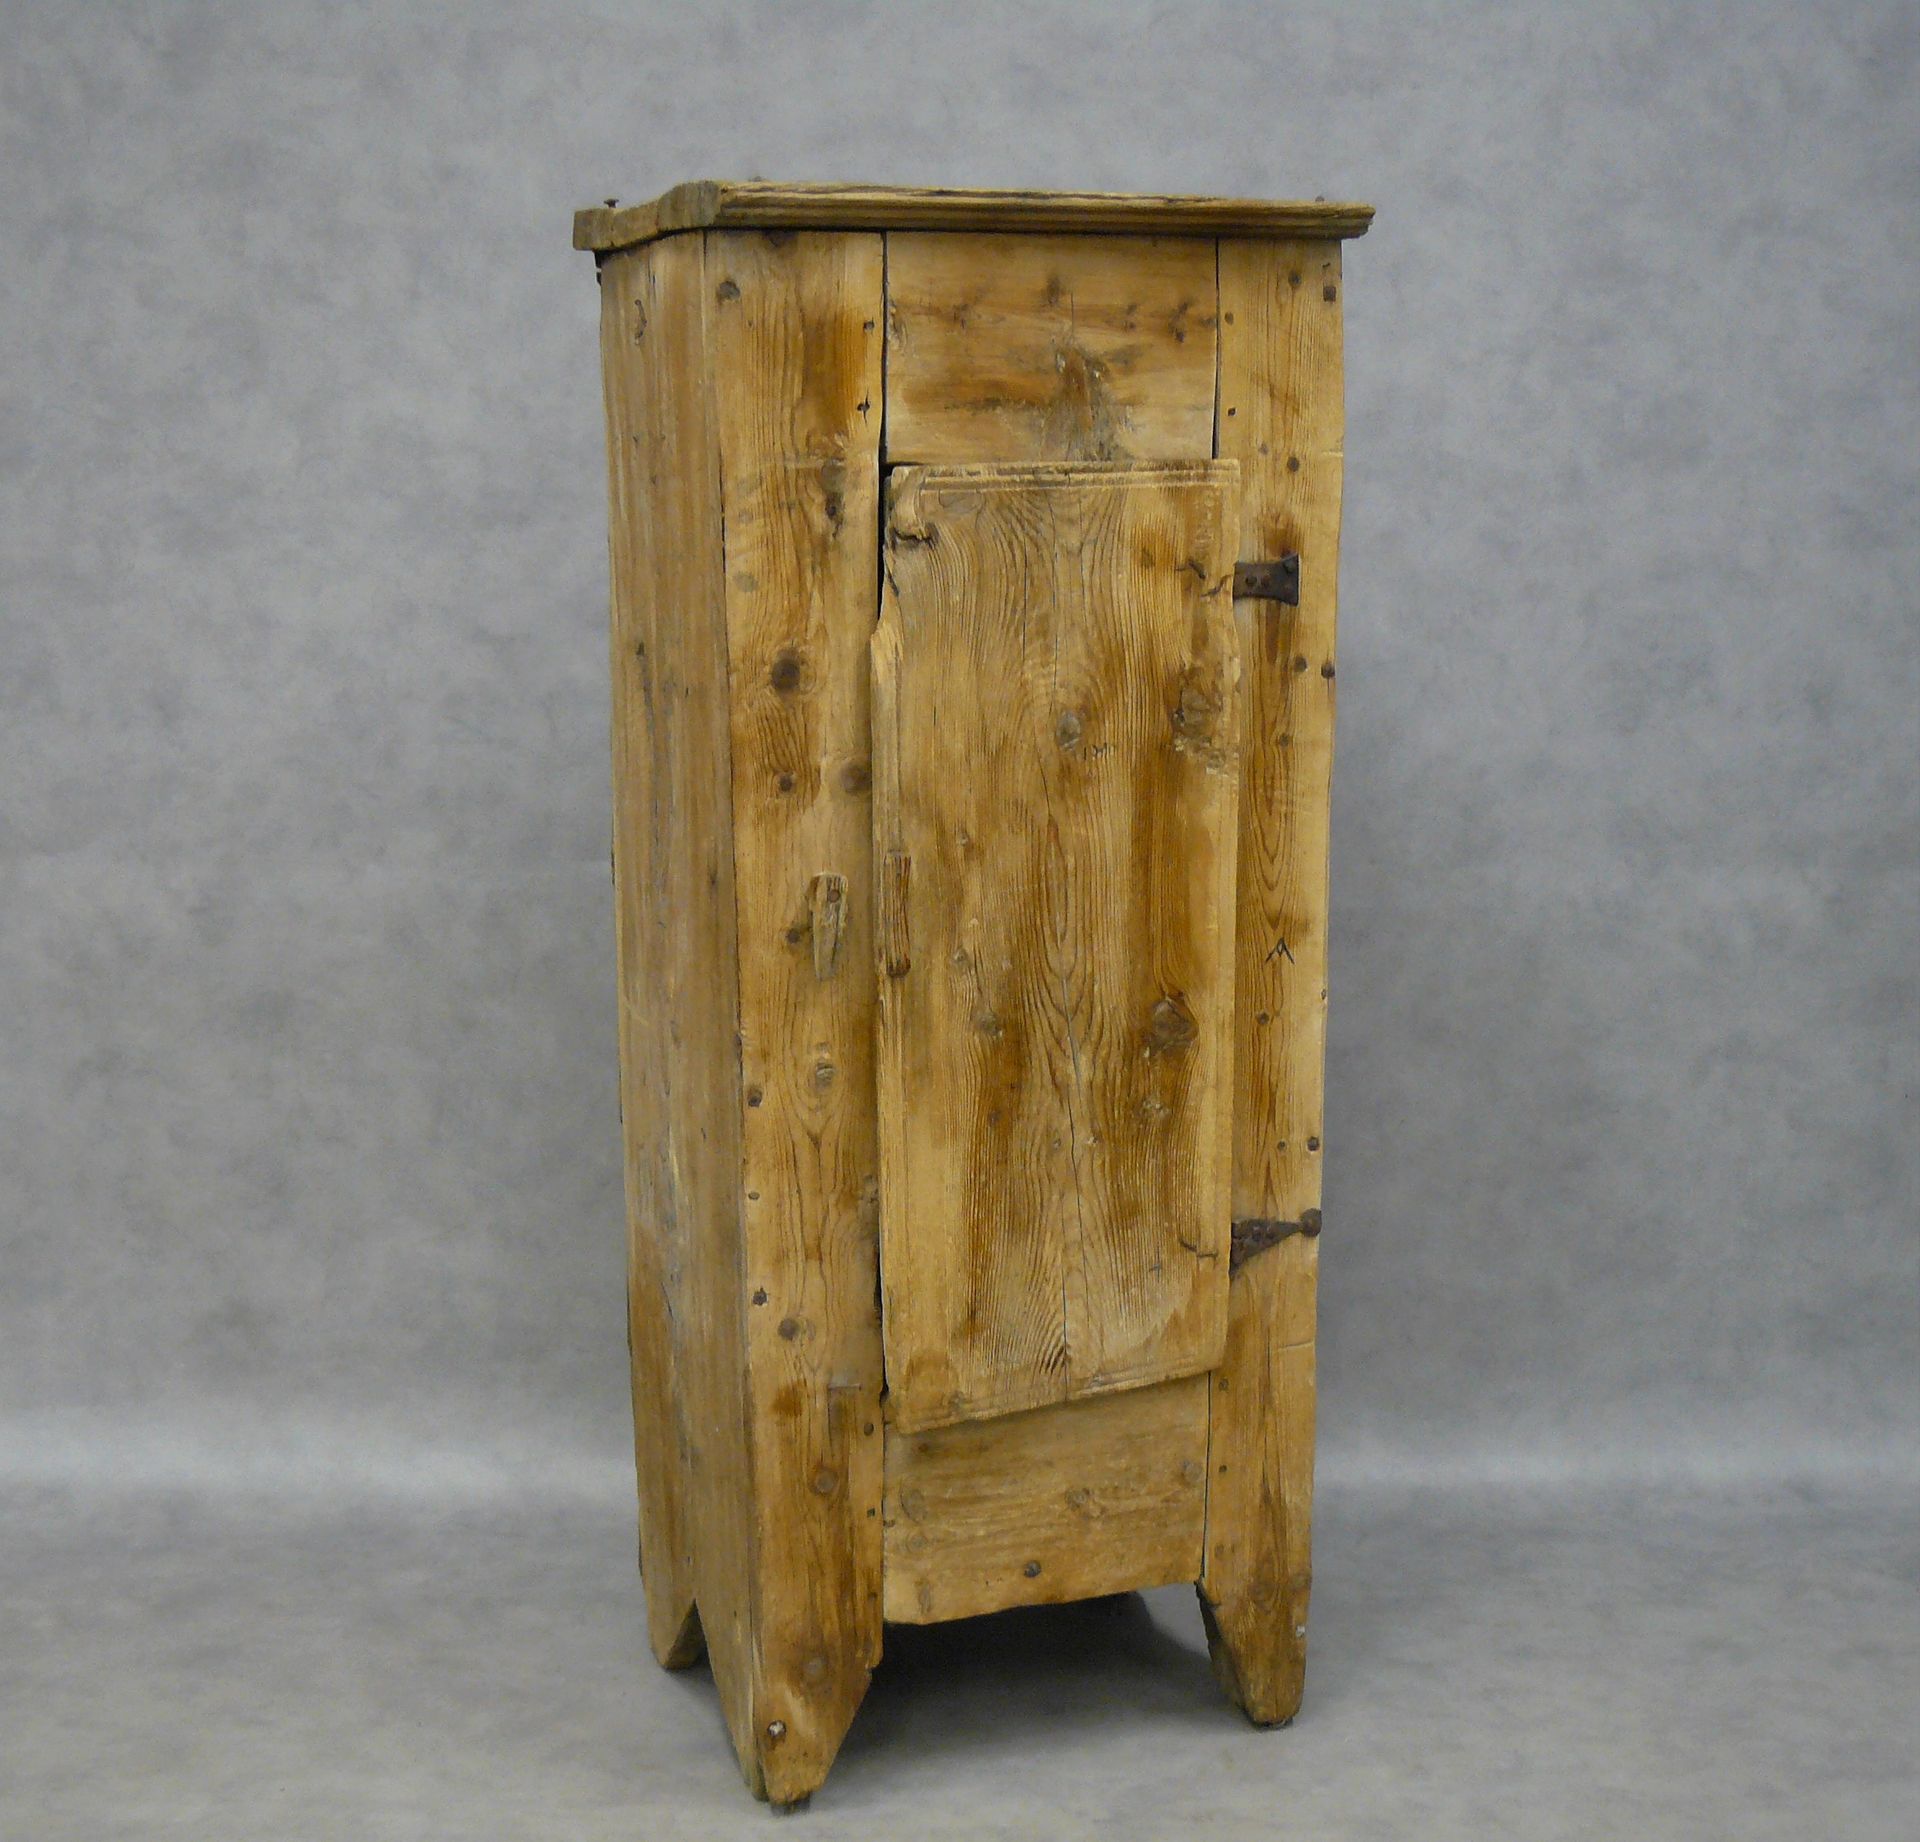 Null un pequeño armario de pino rústico con una puerta - 148 x 63 x 46,5 cm